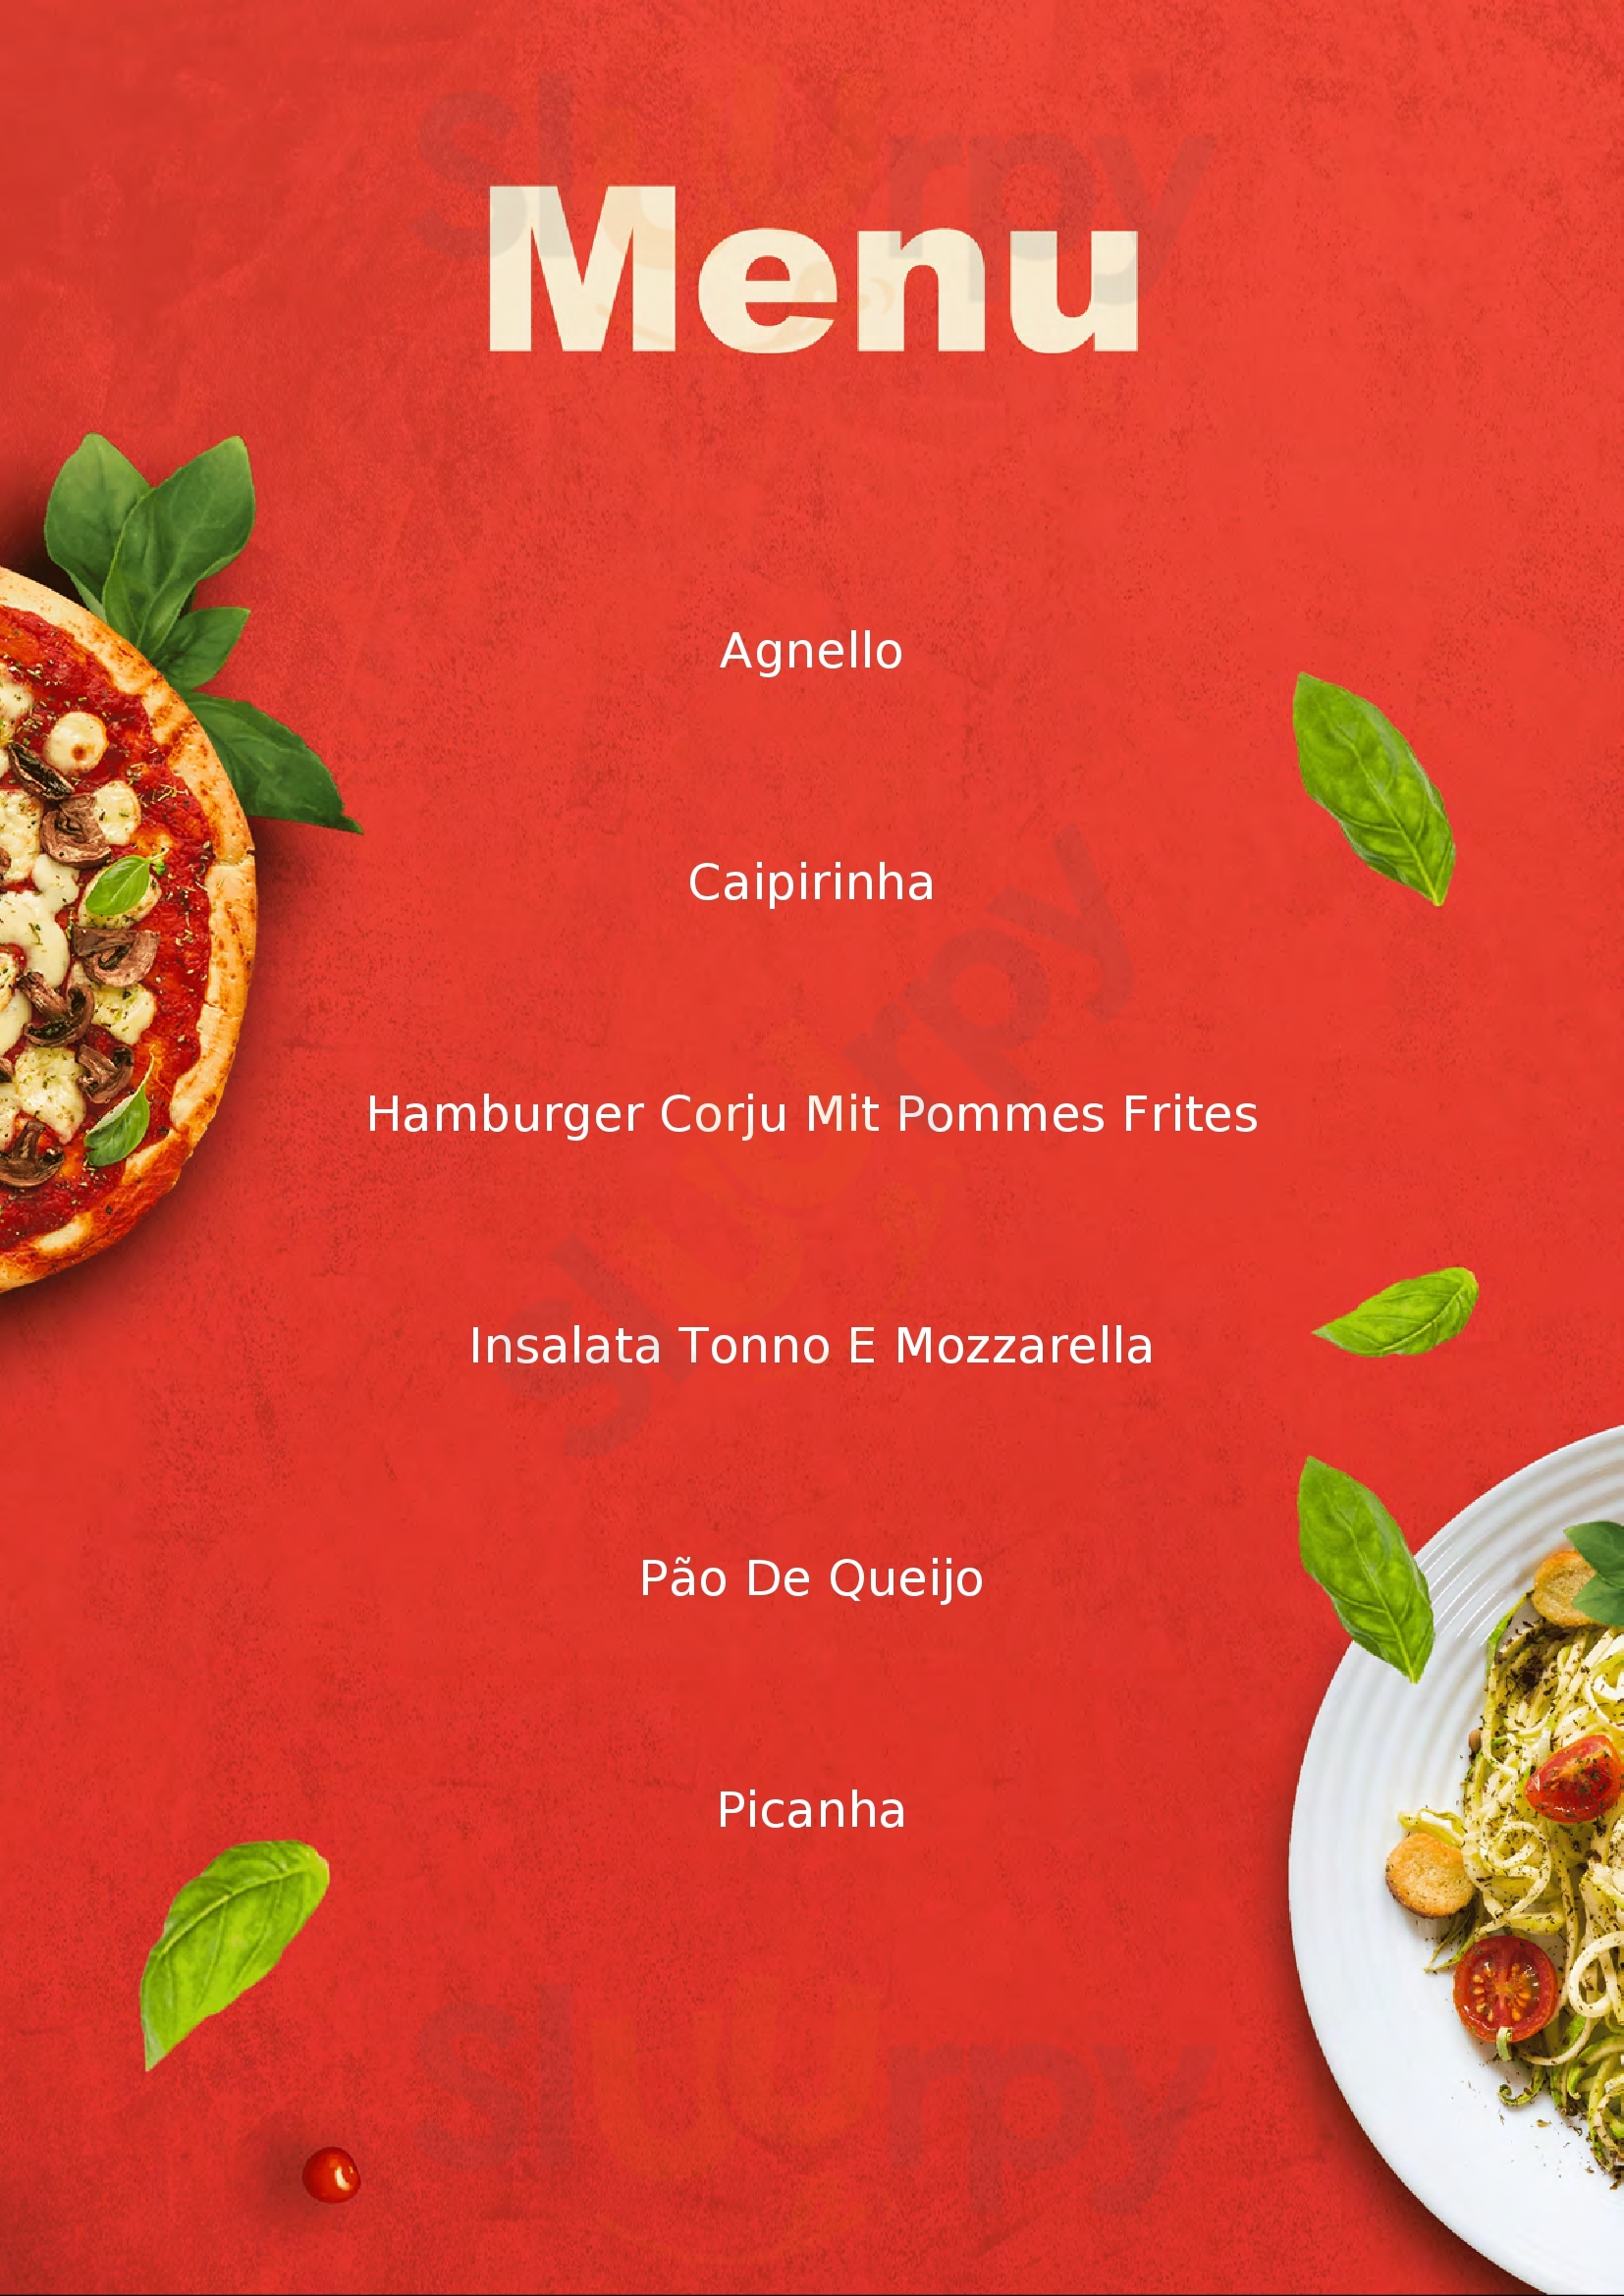 Coruja Restaurant Puegnago sul Garda menù 1 pagina